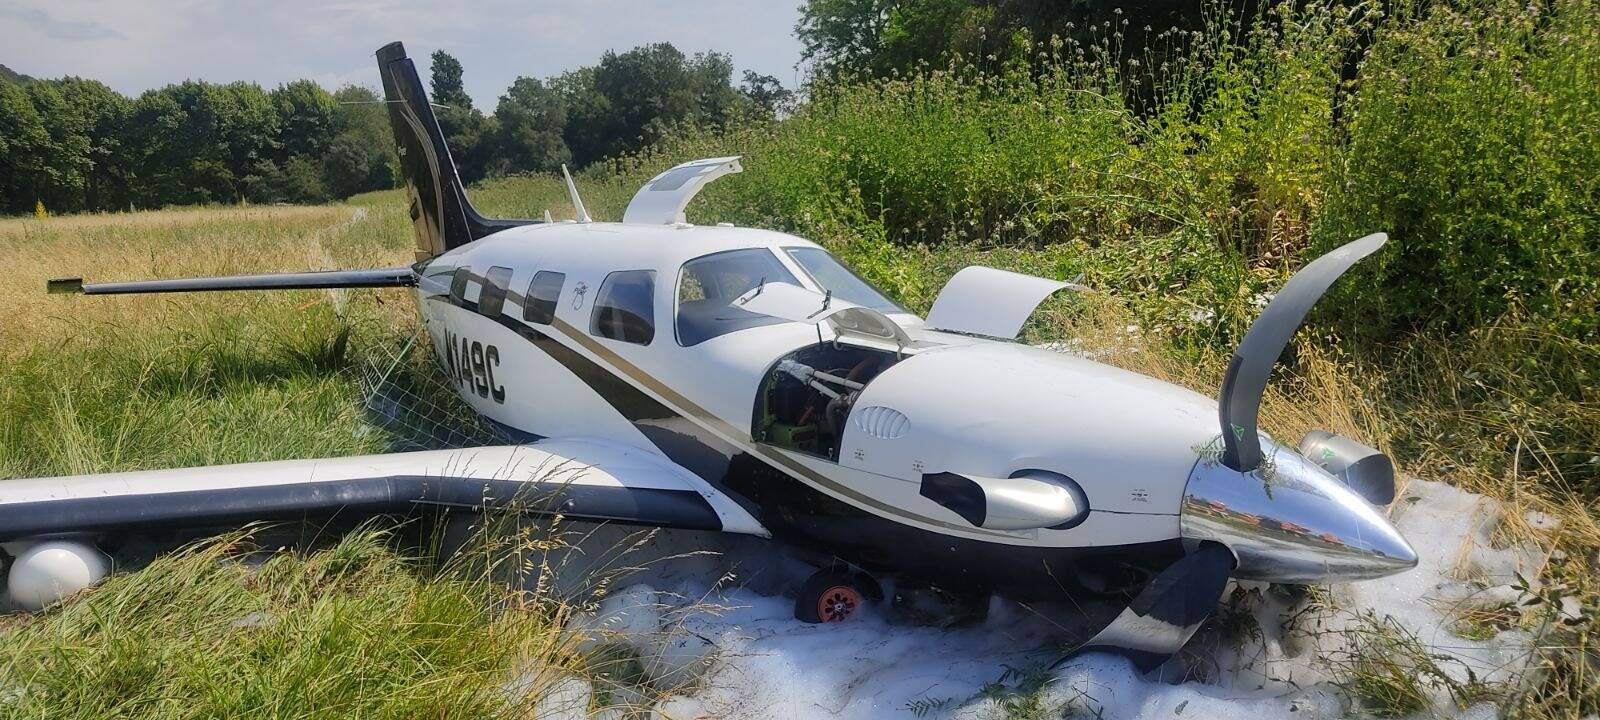 Un Avion Se Crashe Au Moment De Son Décollage à Laéroport De Saint Tropez Var Matin